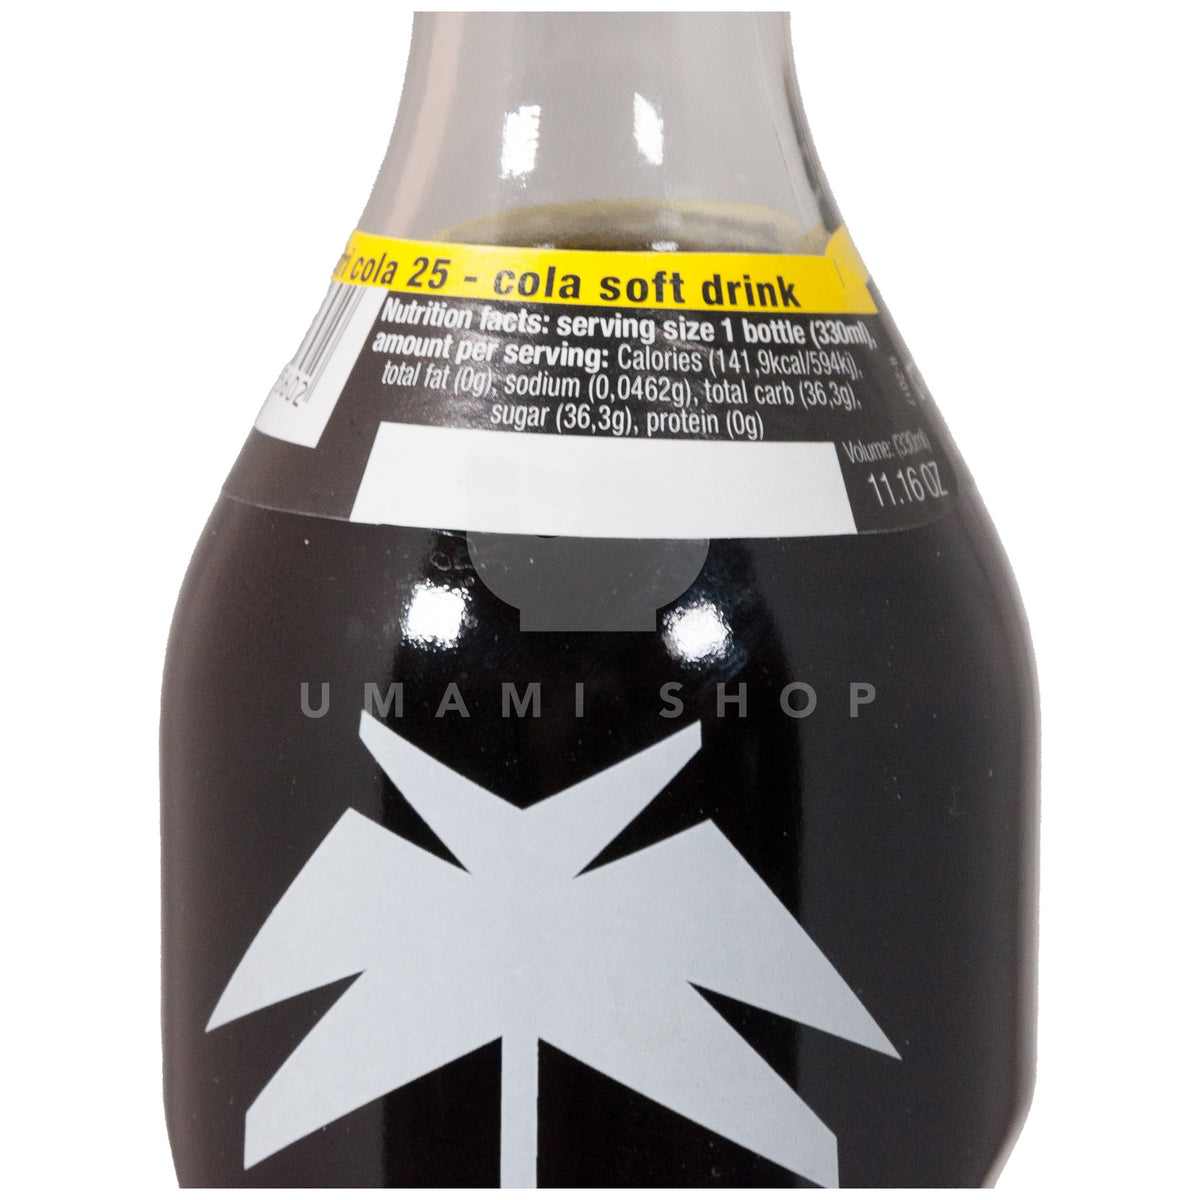 Afri cola online bestellen - officiële verdeler - Drinks 52